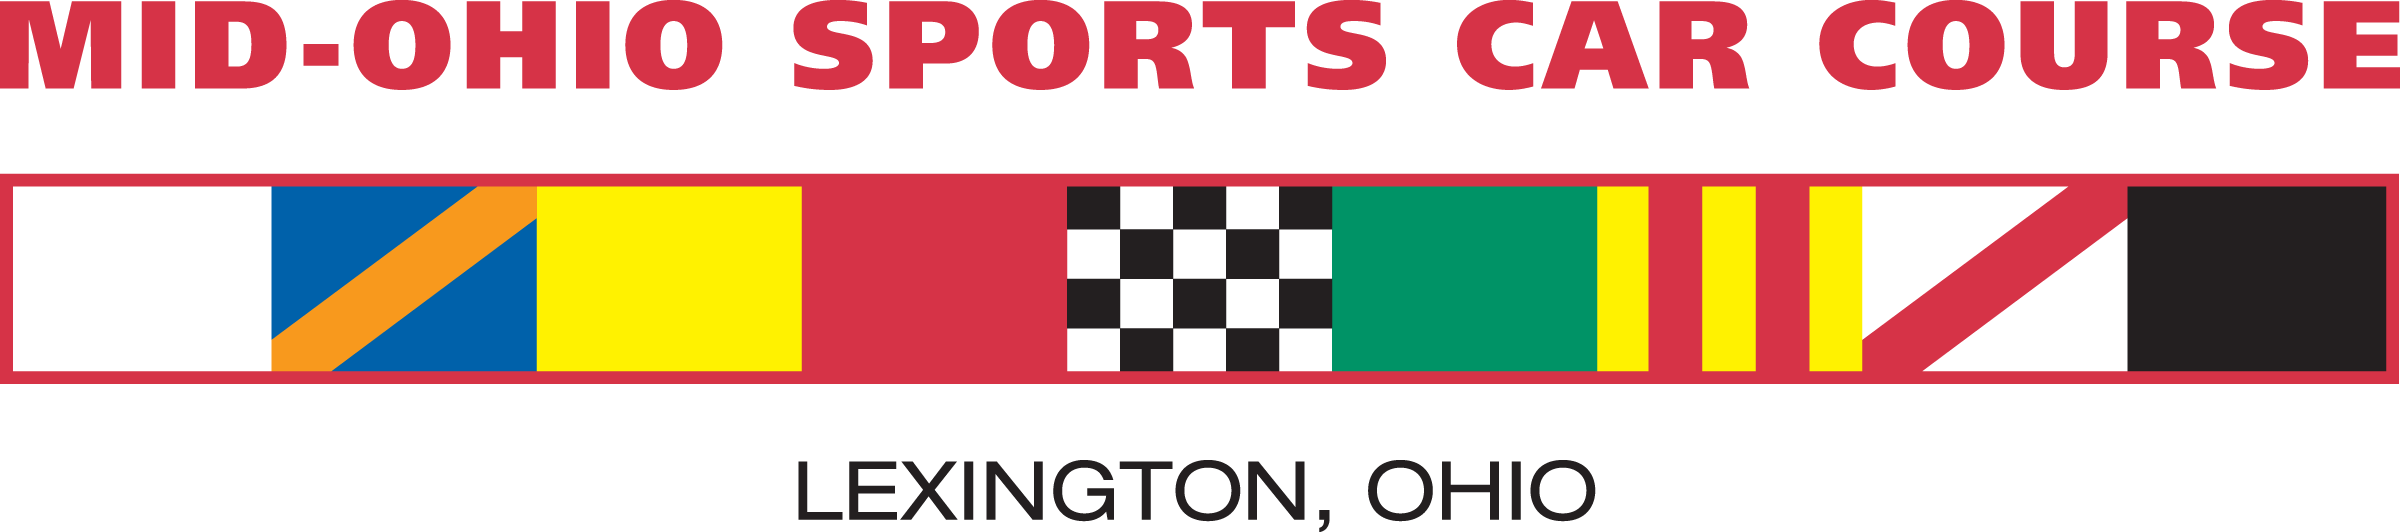 Mid Ohio Sports Car Course